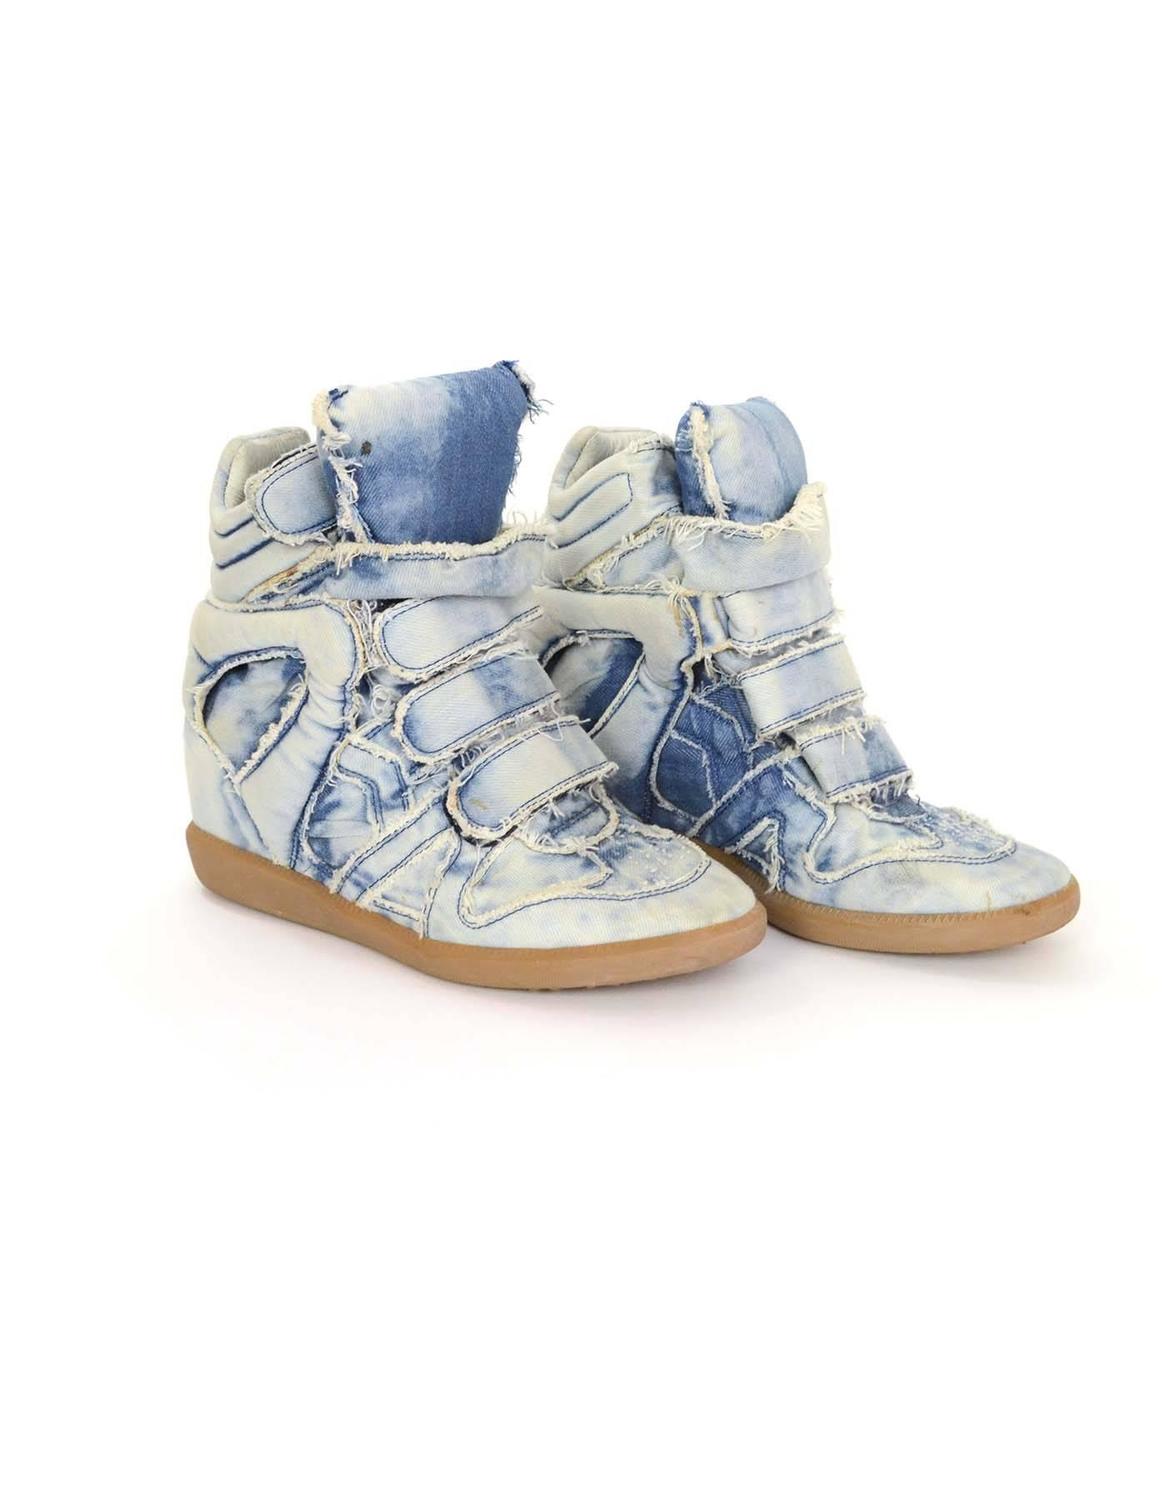 Isabel Marant Blue Denim Bekket Sneakers sz 37 For Sale at 1stdibs